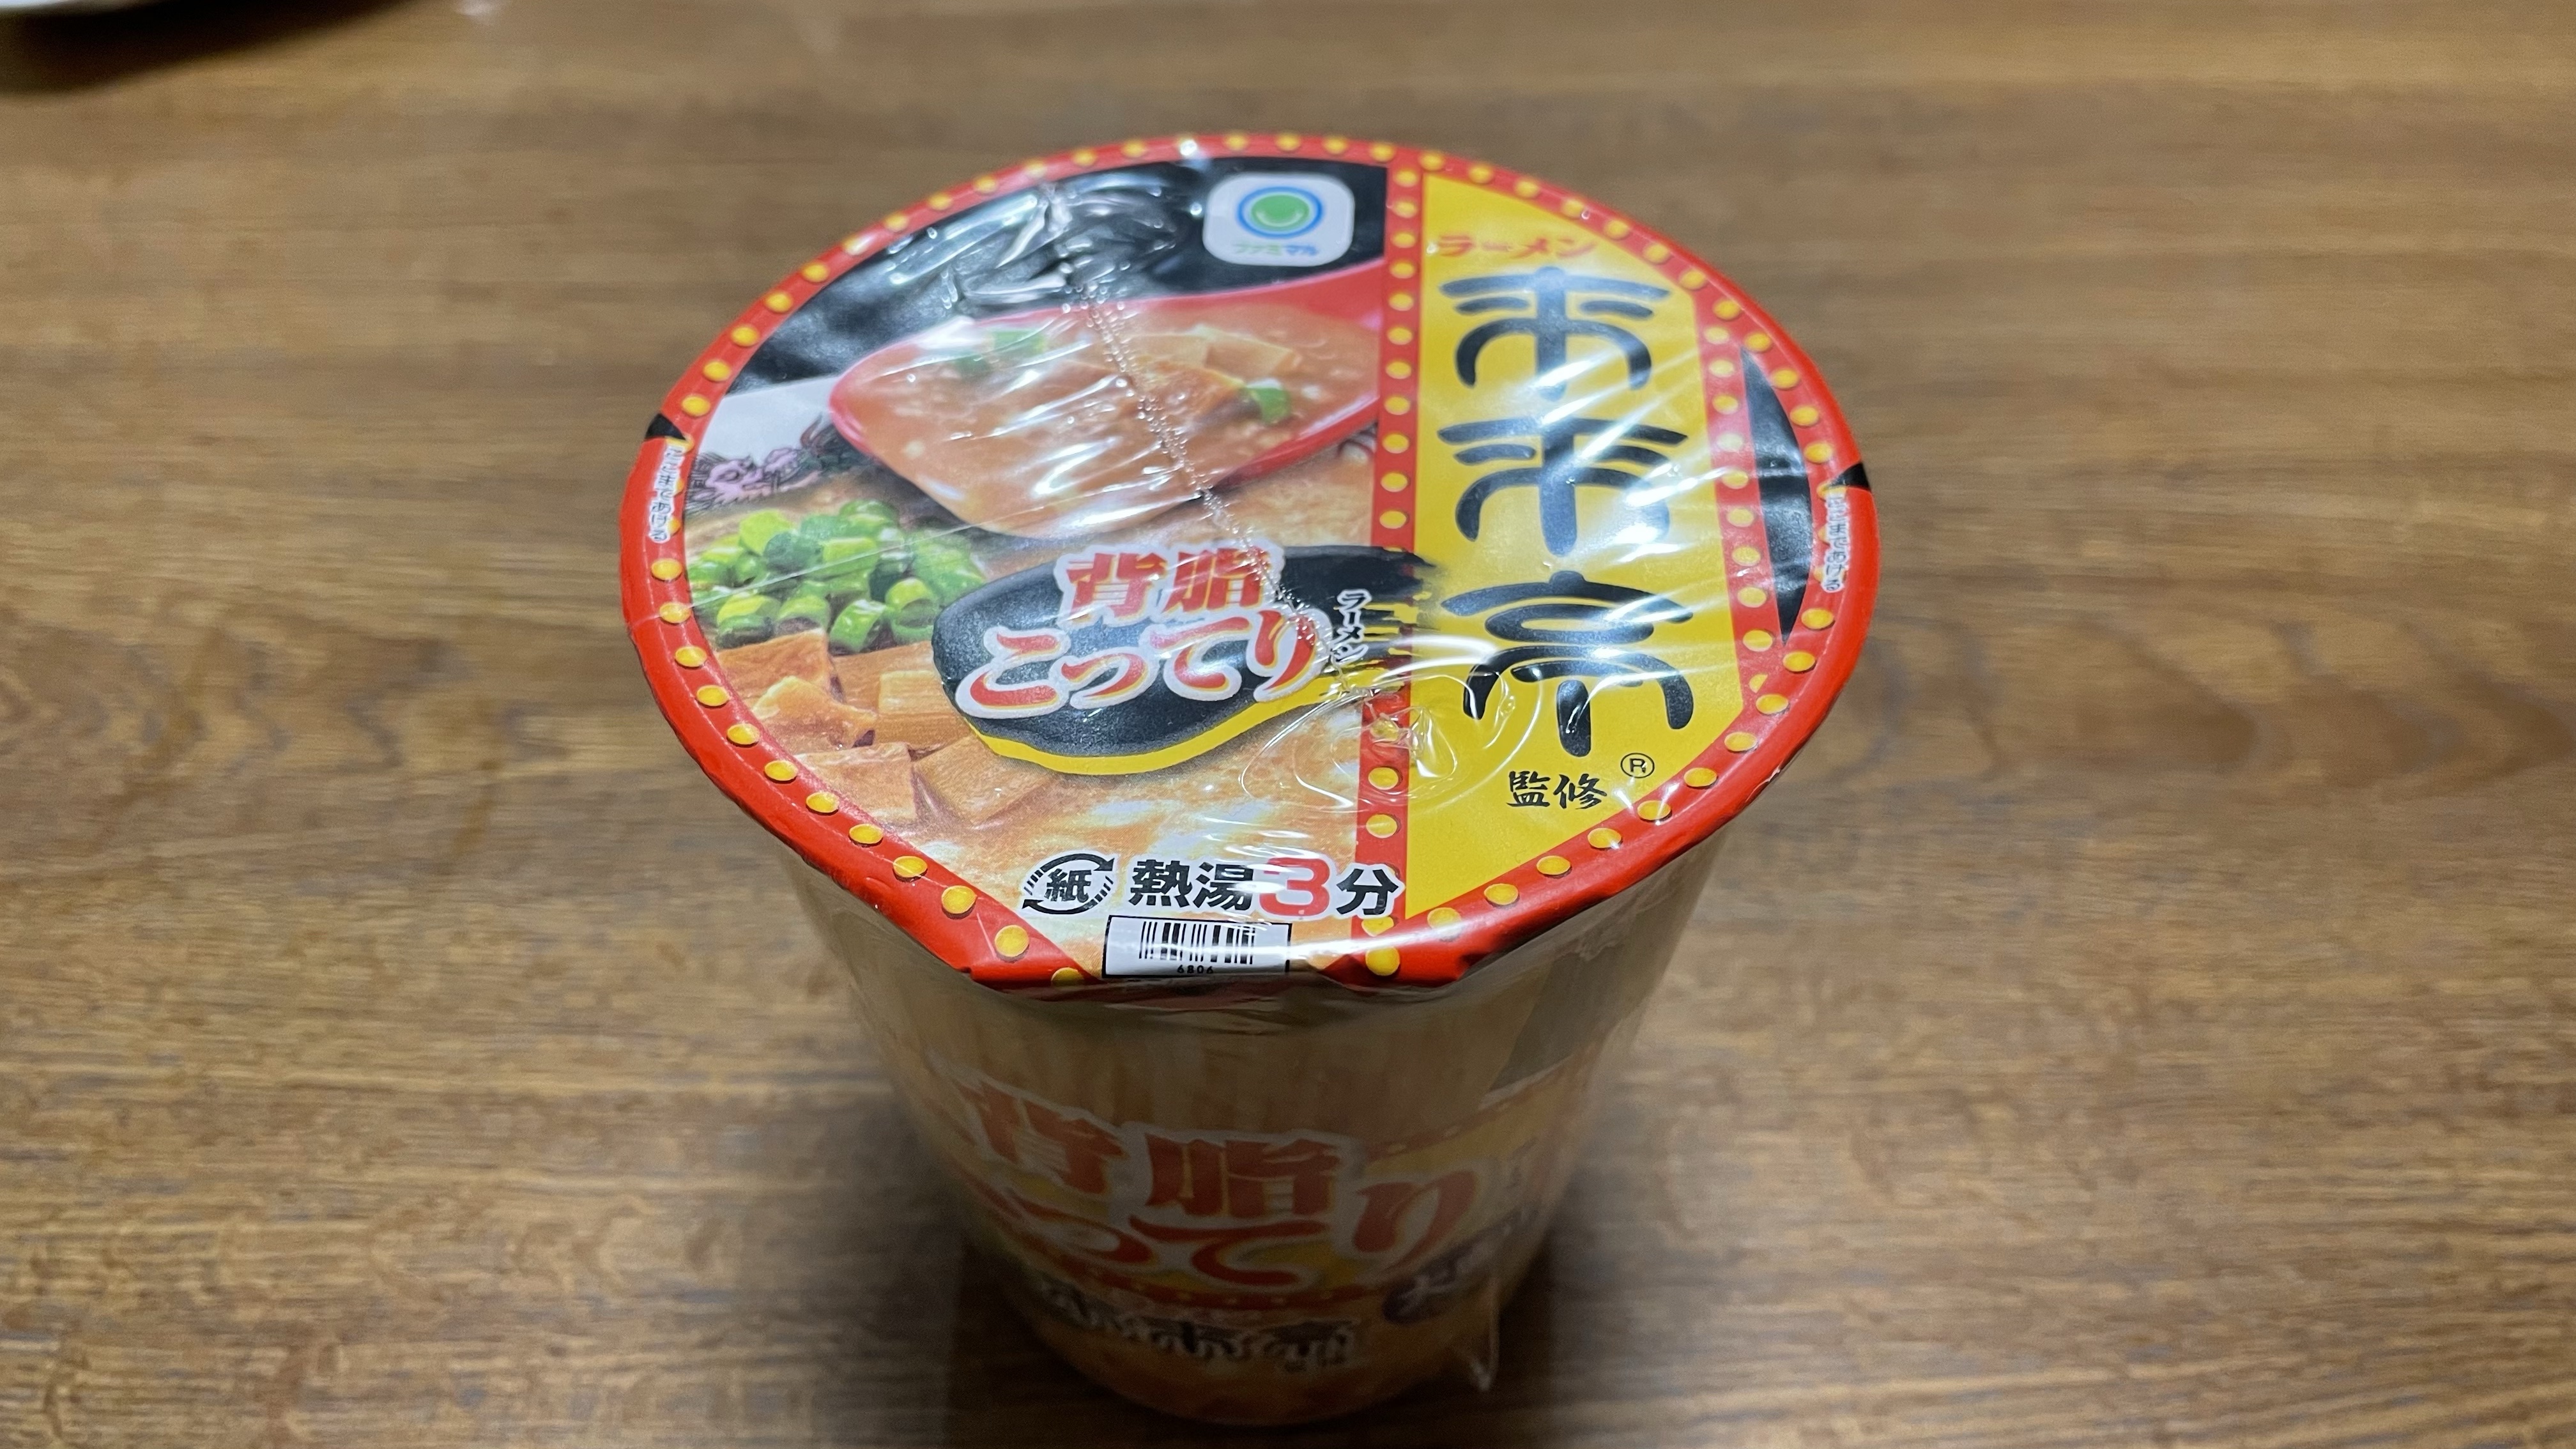 【エースコック】来来亭-背脂こってりラーメン-を食べてみました!!